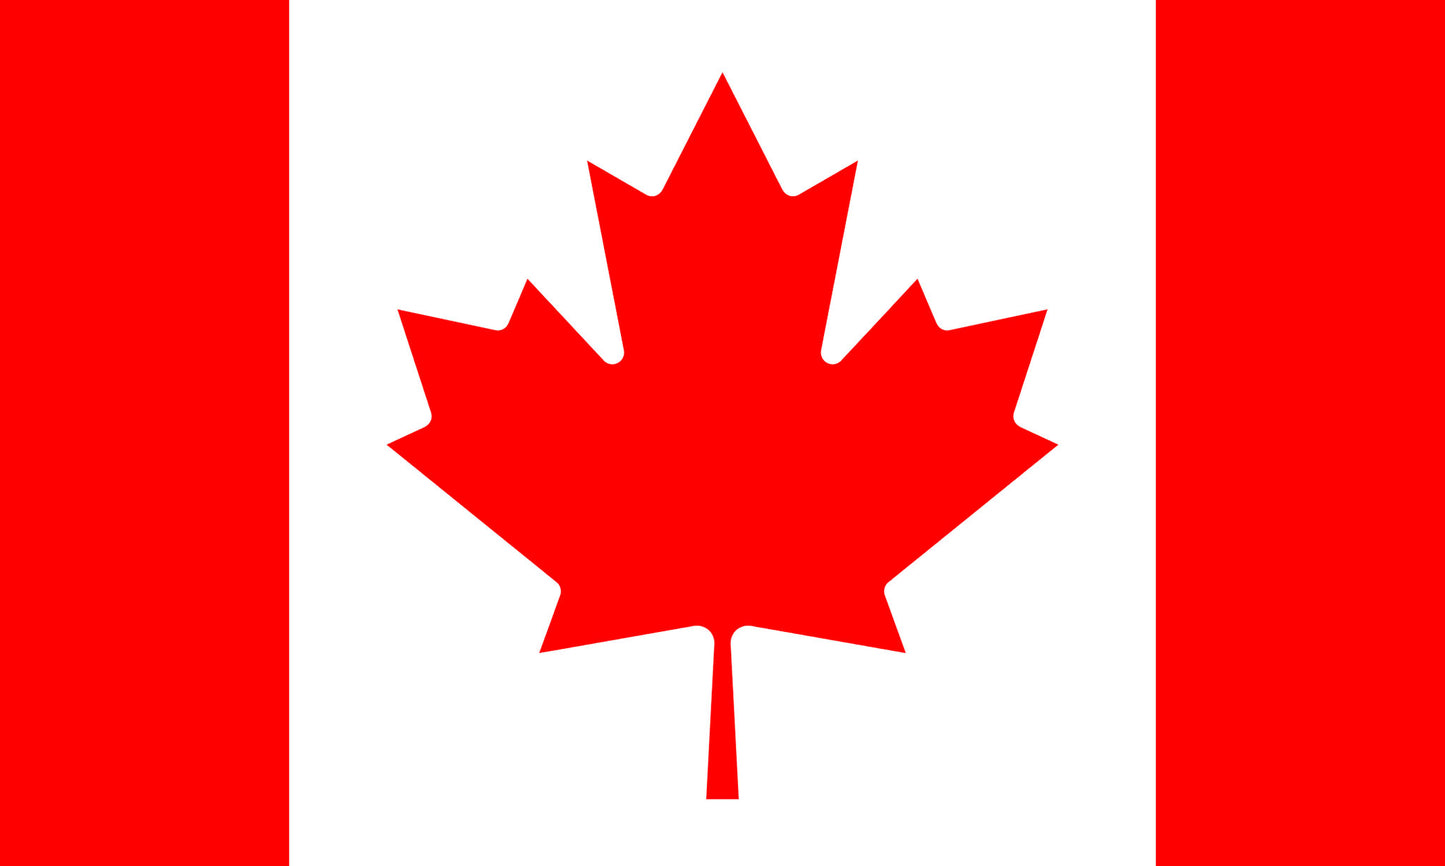 INR-CAN-15x22-1 - государственный флаг Канады, размер: 15х22 см, материал: атлас. Печать с одной стороны. Подставка и шток приобретаются отдельно